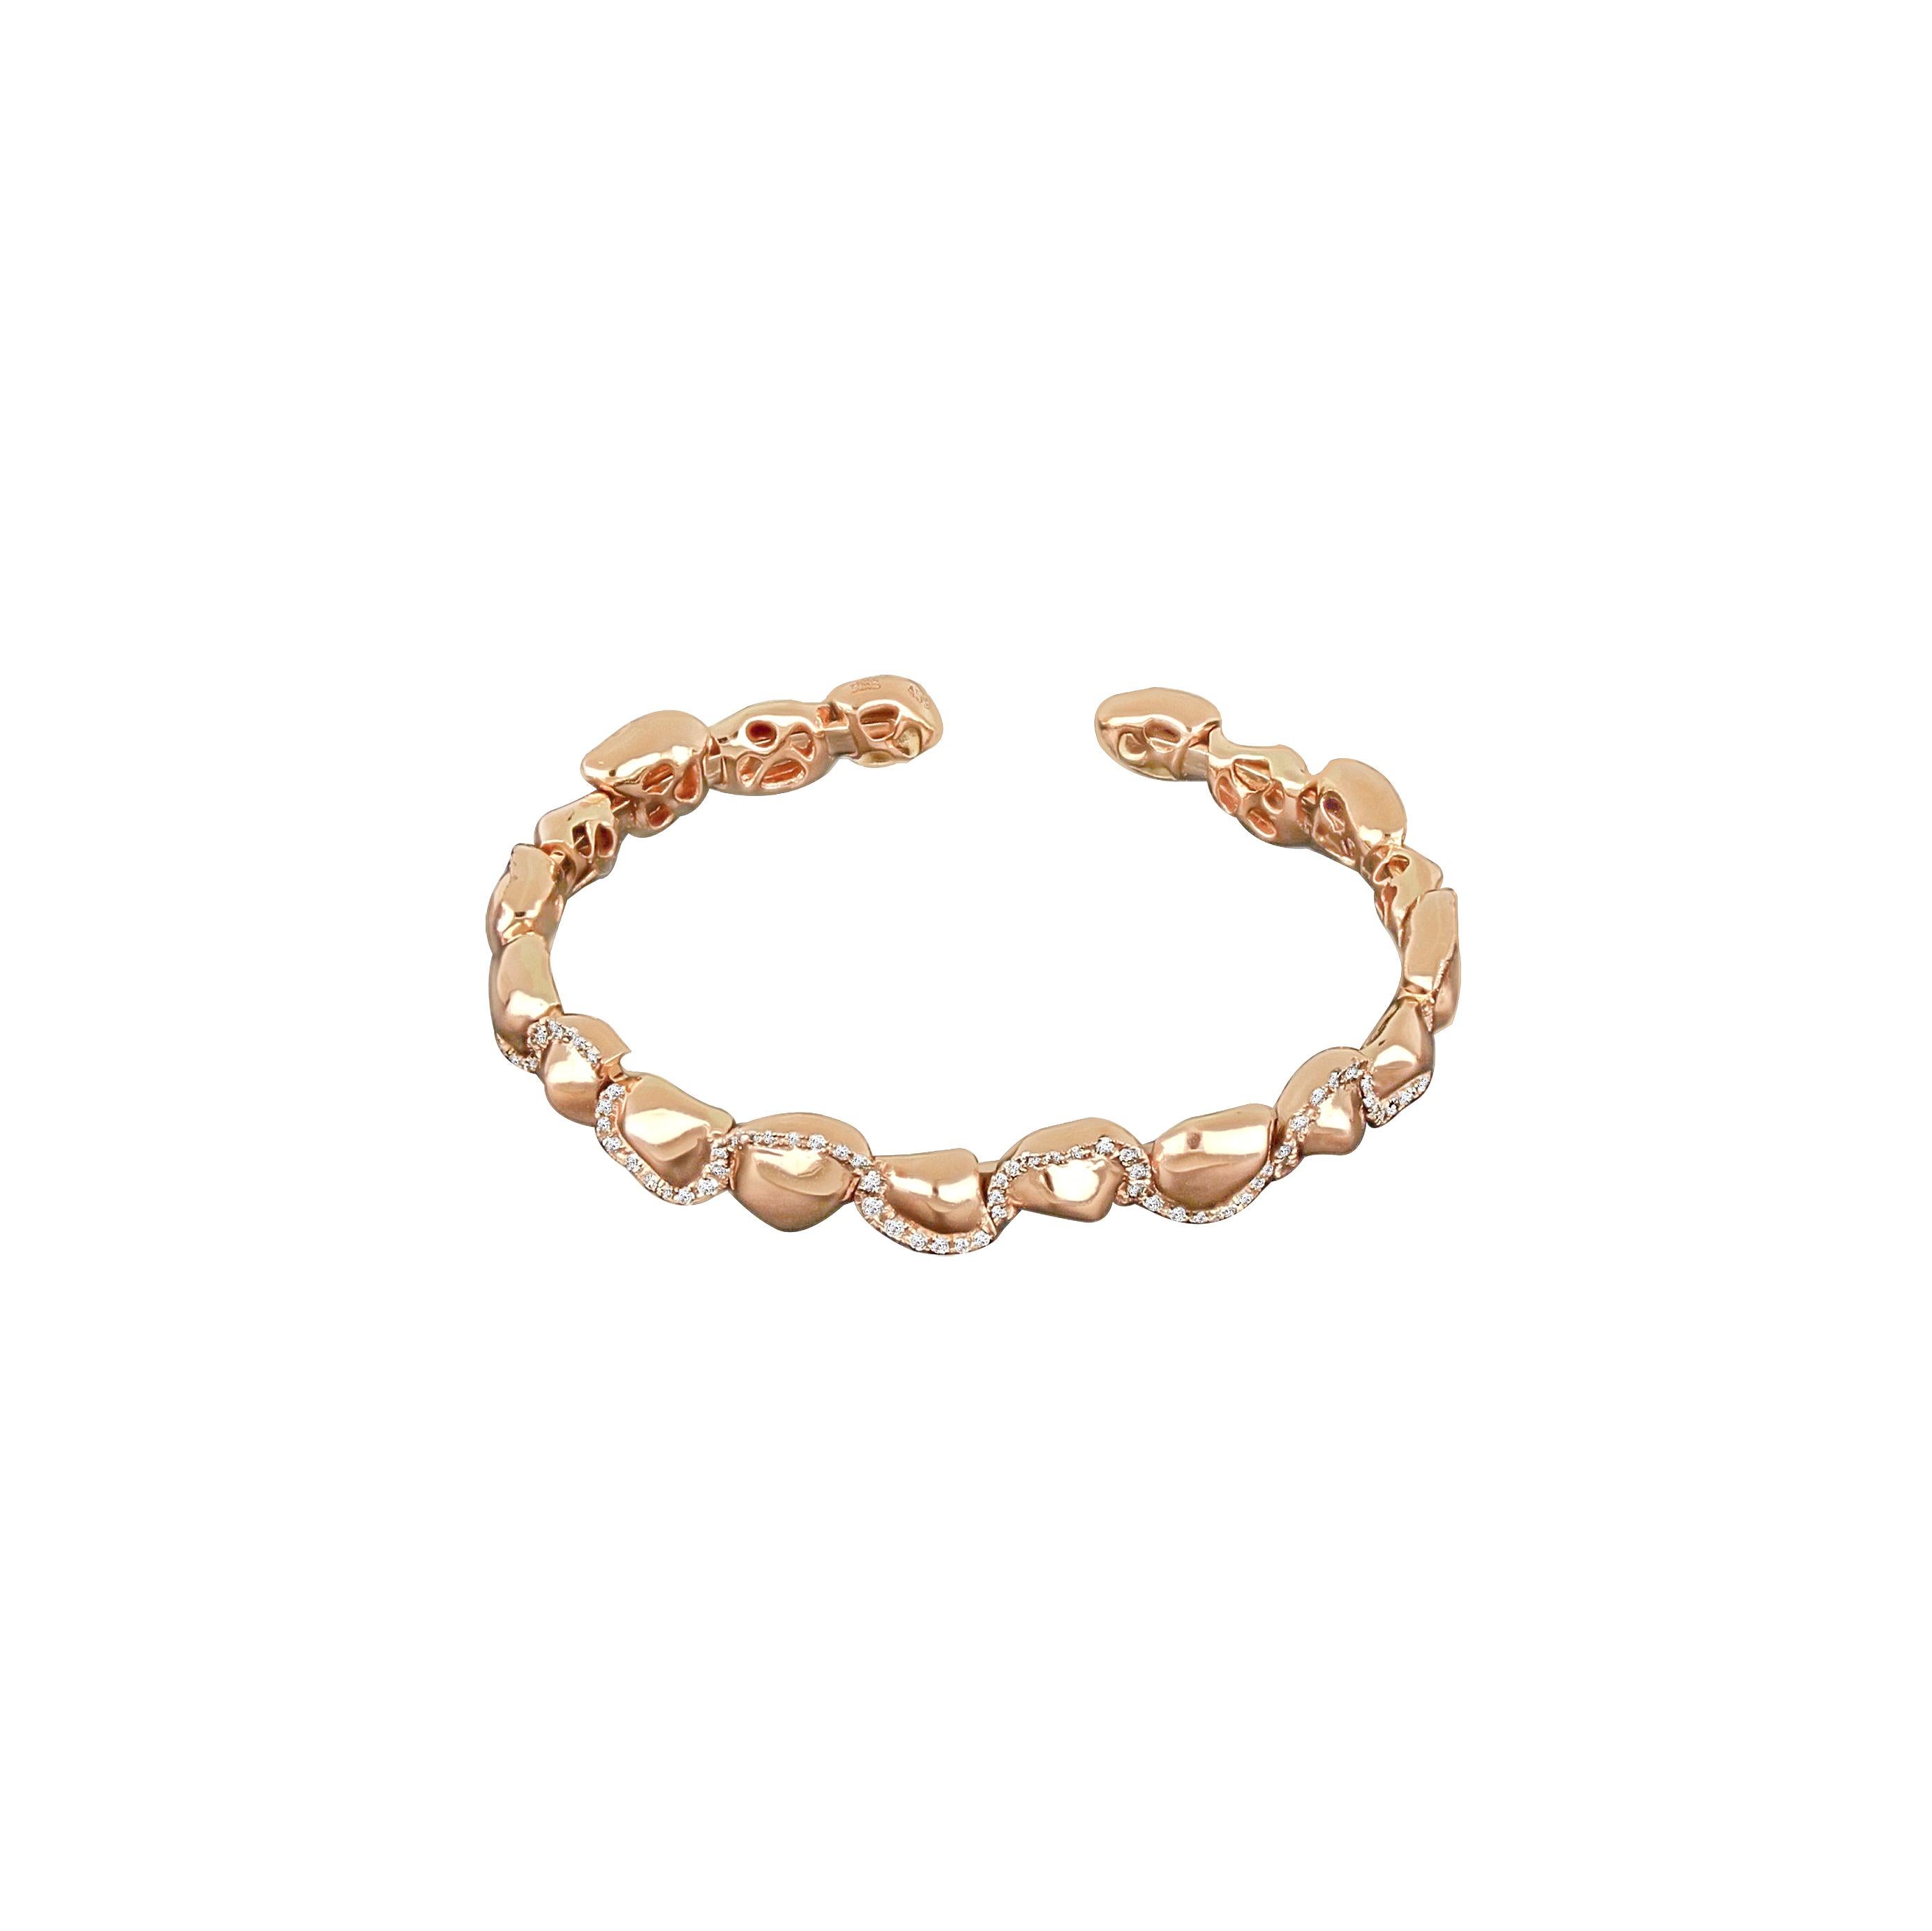 Le bracelet de la Collection Sal s'inspire des motifs et des marques du désert. L'entrelacement des diamants ronds les plus fins et des pépites d'or rose crée un écho aux nombreuses histoires des femmes résilientes du désert.

-	Poids : 20,86 g